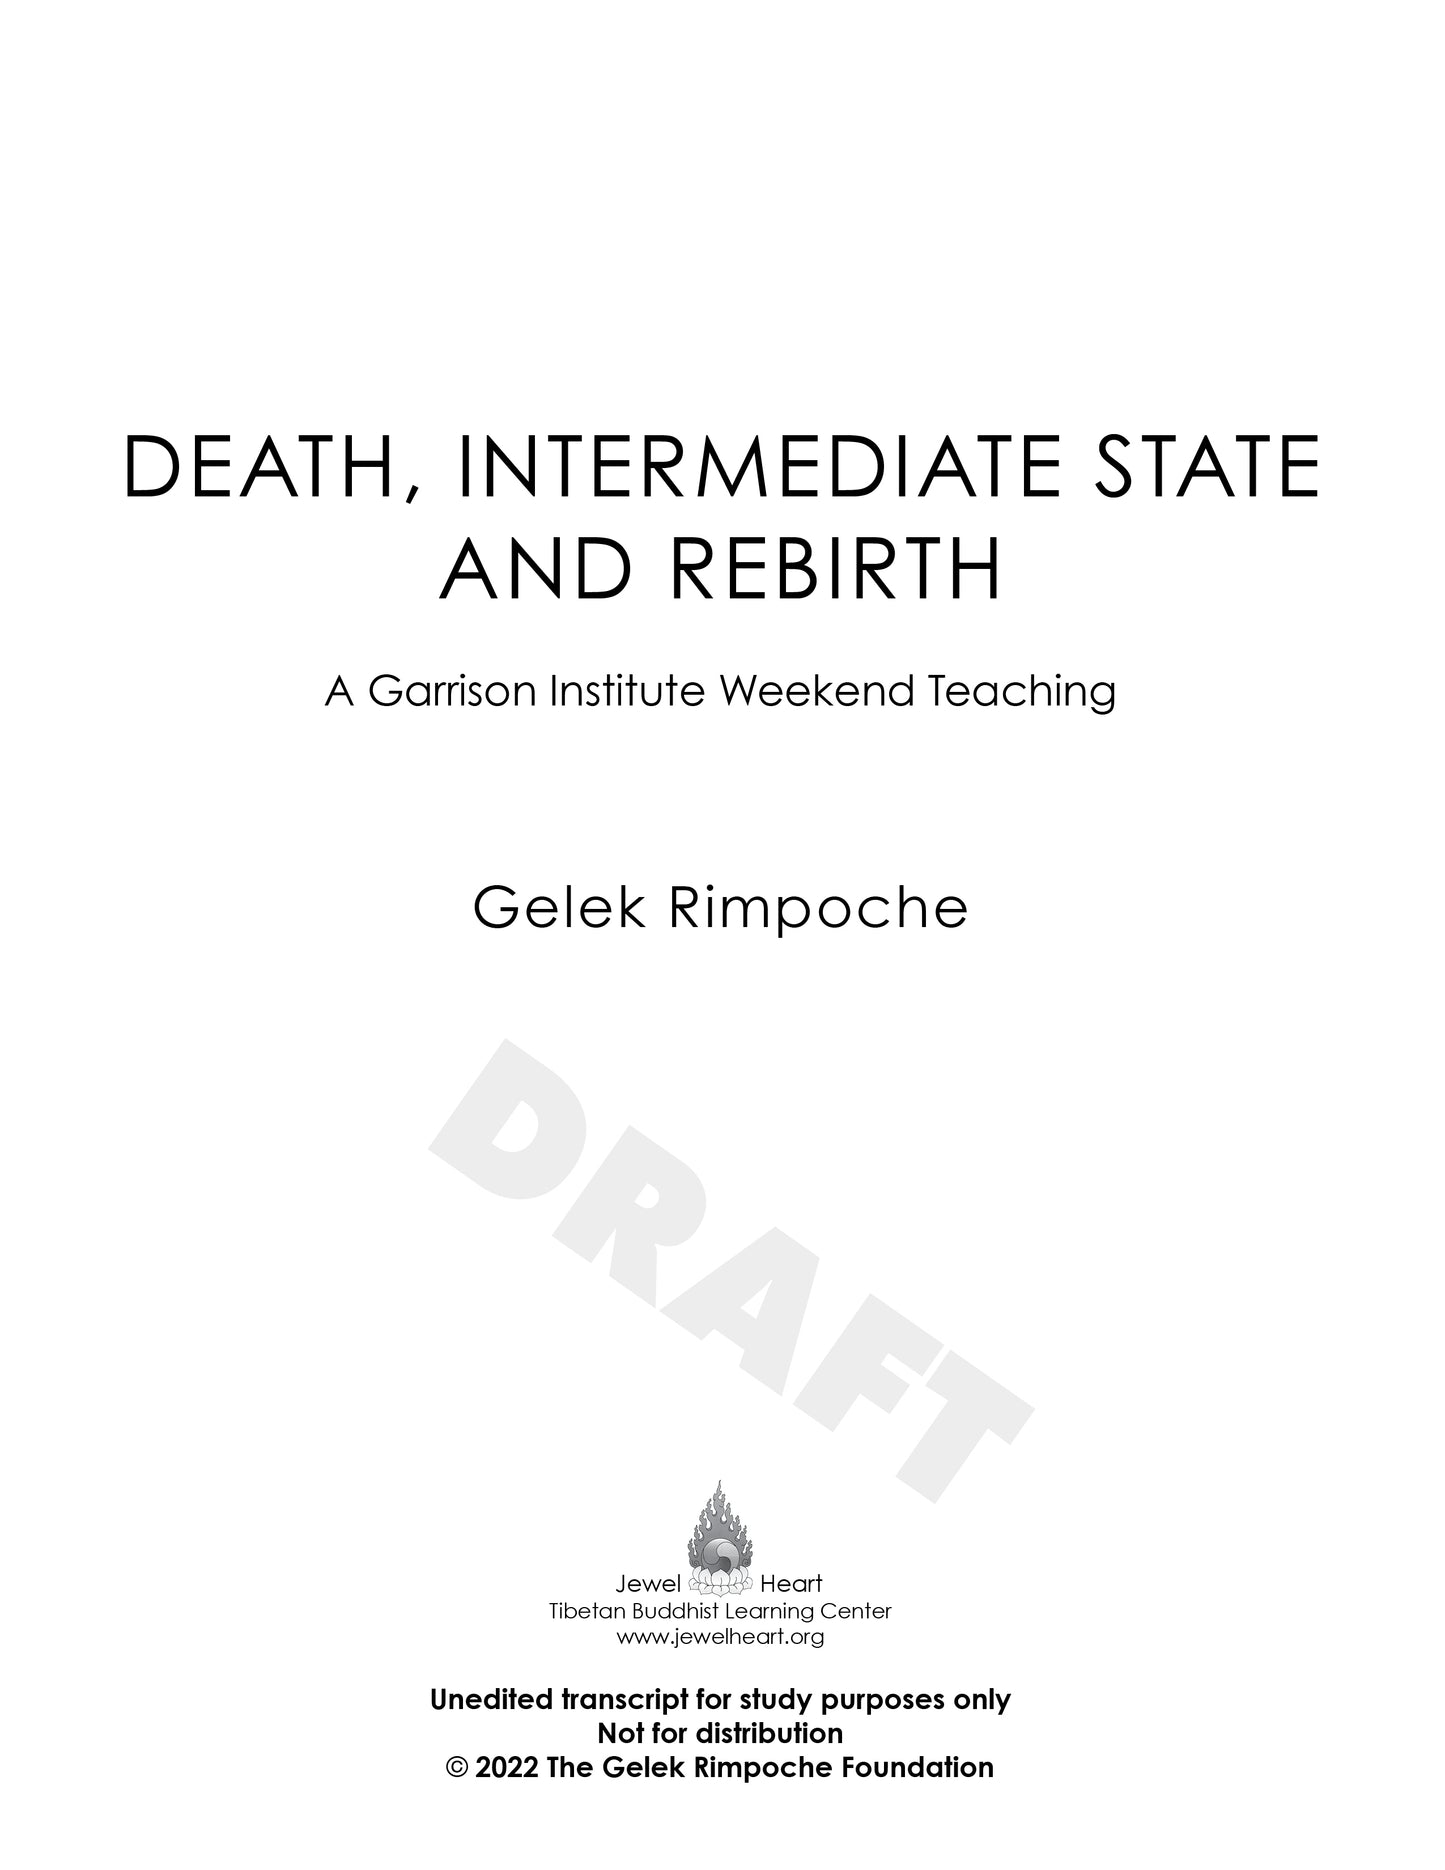 Death, Intermediate State and Rebirth